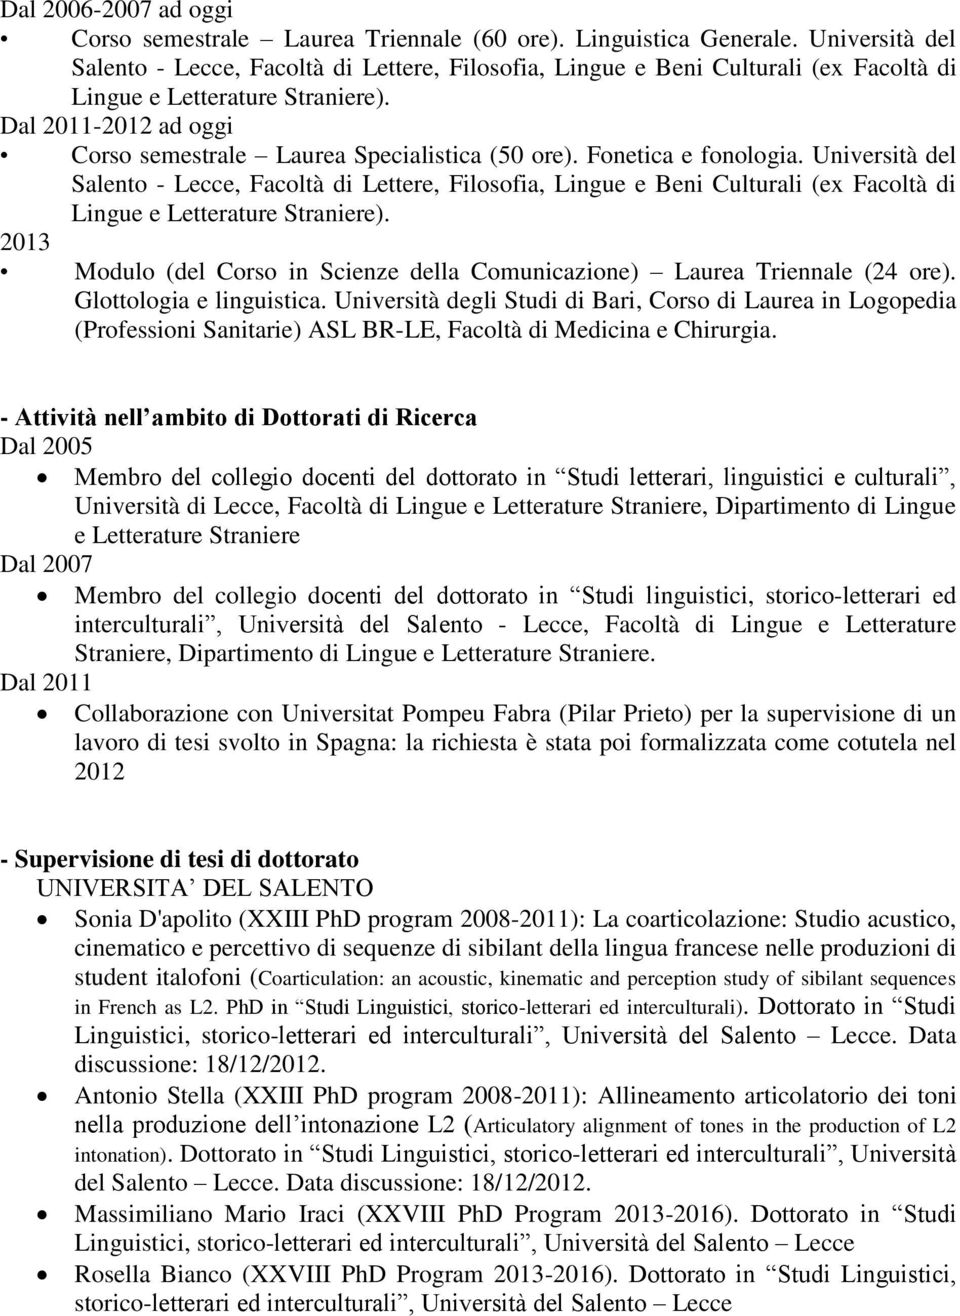 Dal 2011-2012 ad oggi Corso semestrale Laurea Specialistica (50 ore). Fonetica e fonologia.  2013 Modulo (del Corso in Scienze della Comunicazione) Laurea Triennale (24 ore).